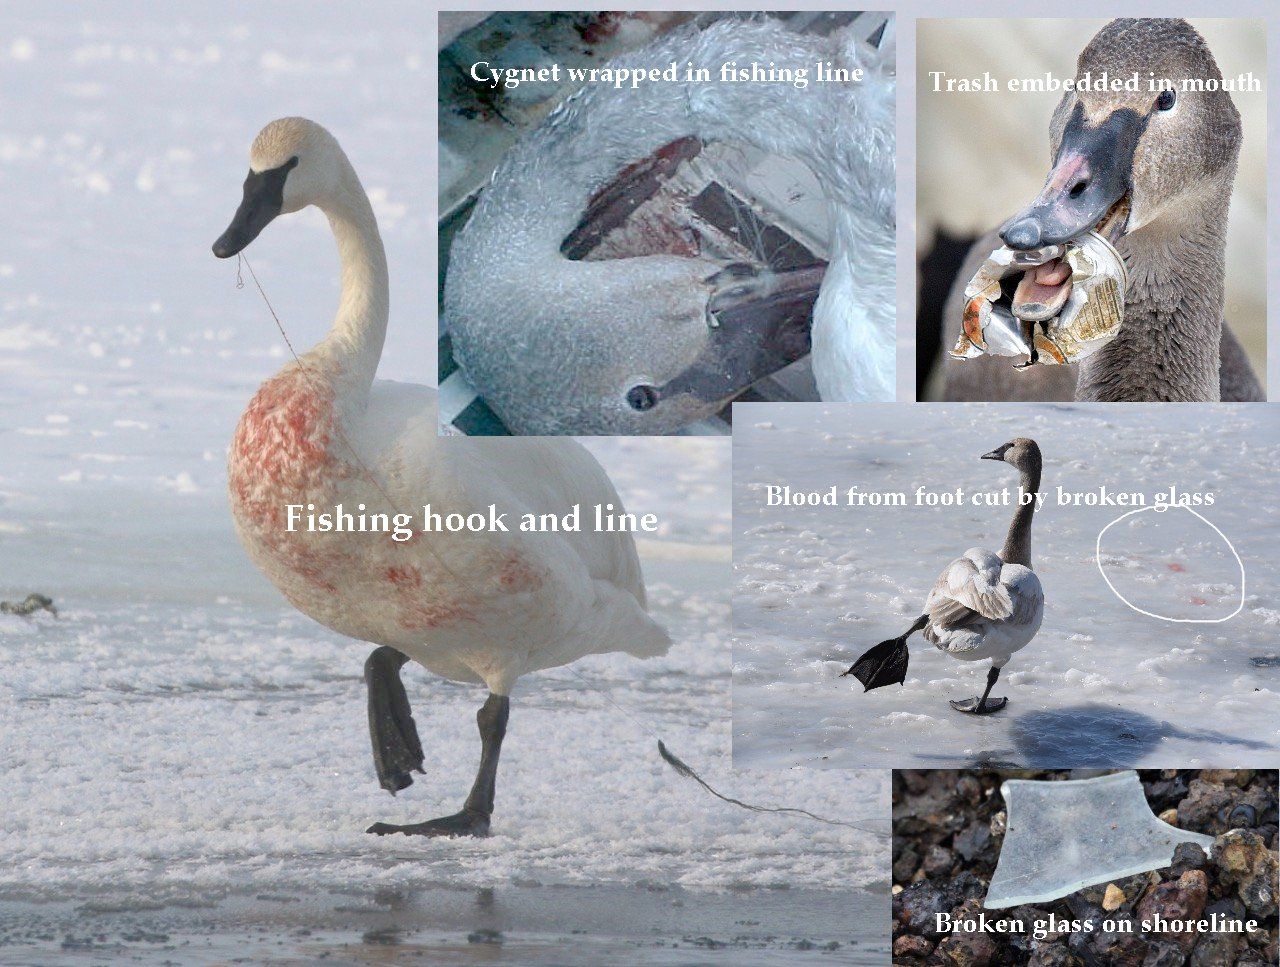 Swan injuries